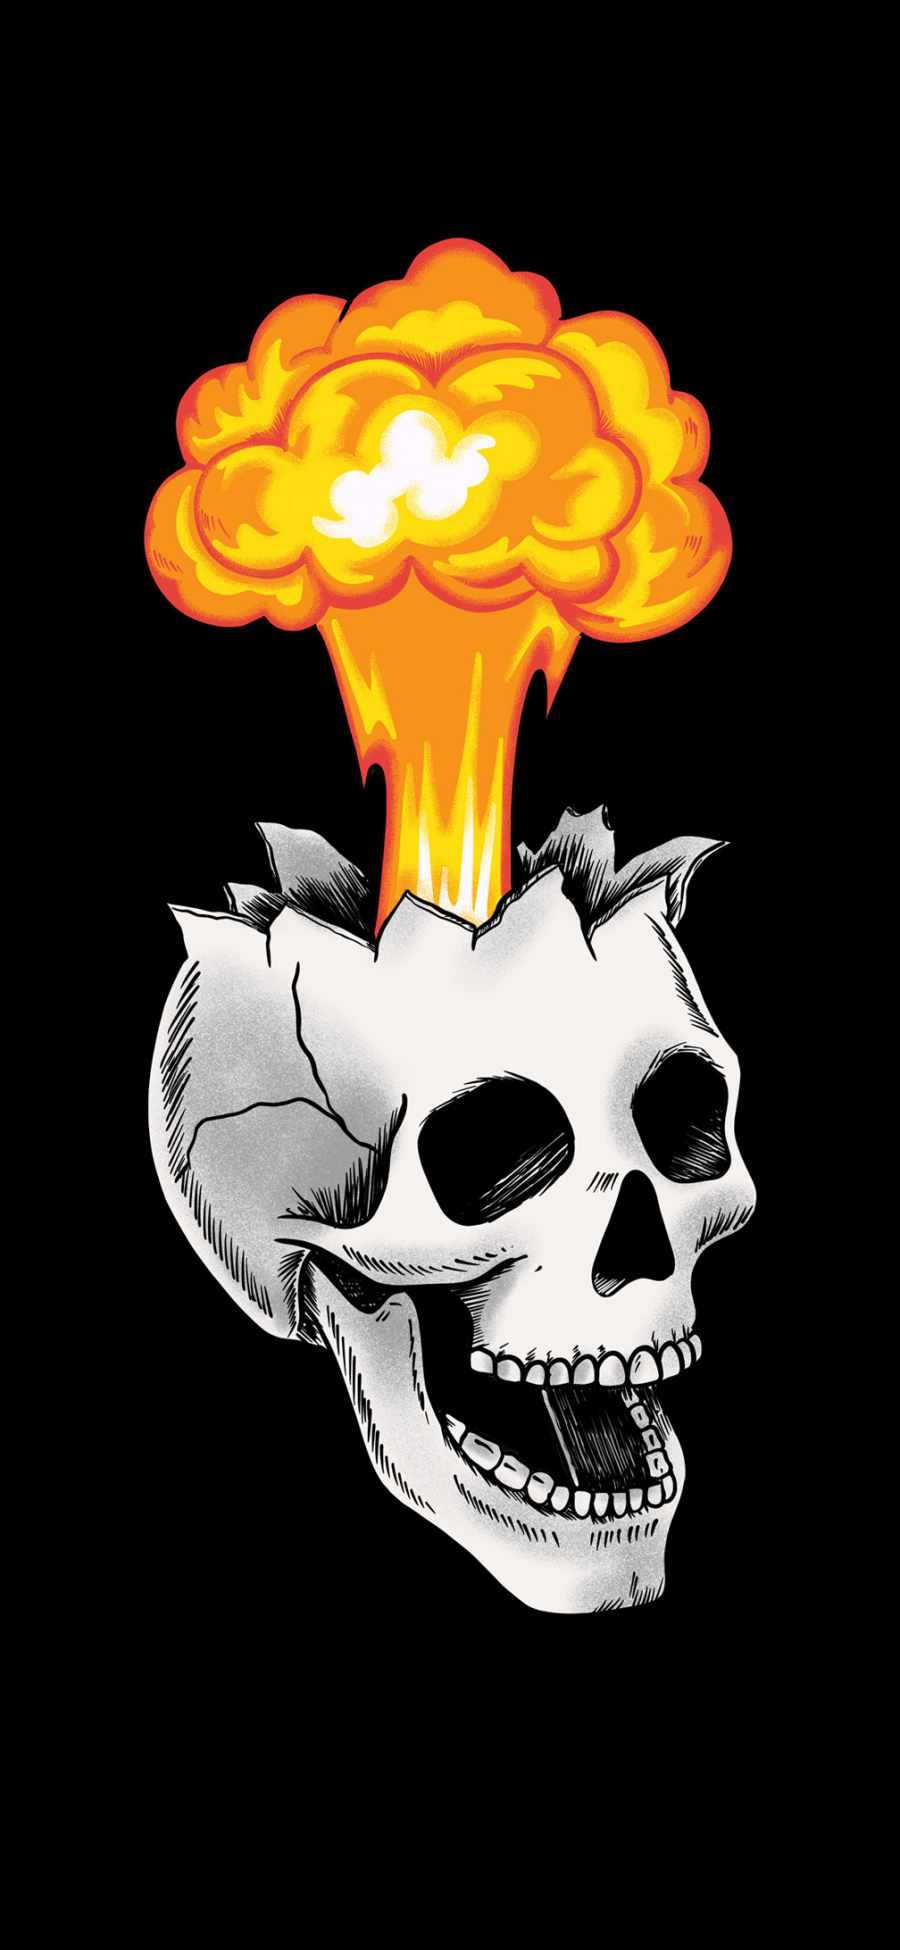 Skull Explosion HD iPhone Wallpaper